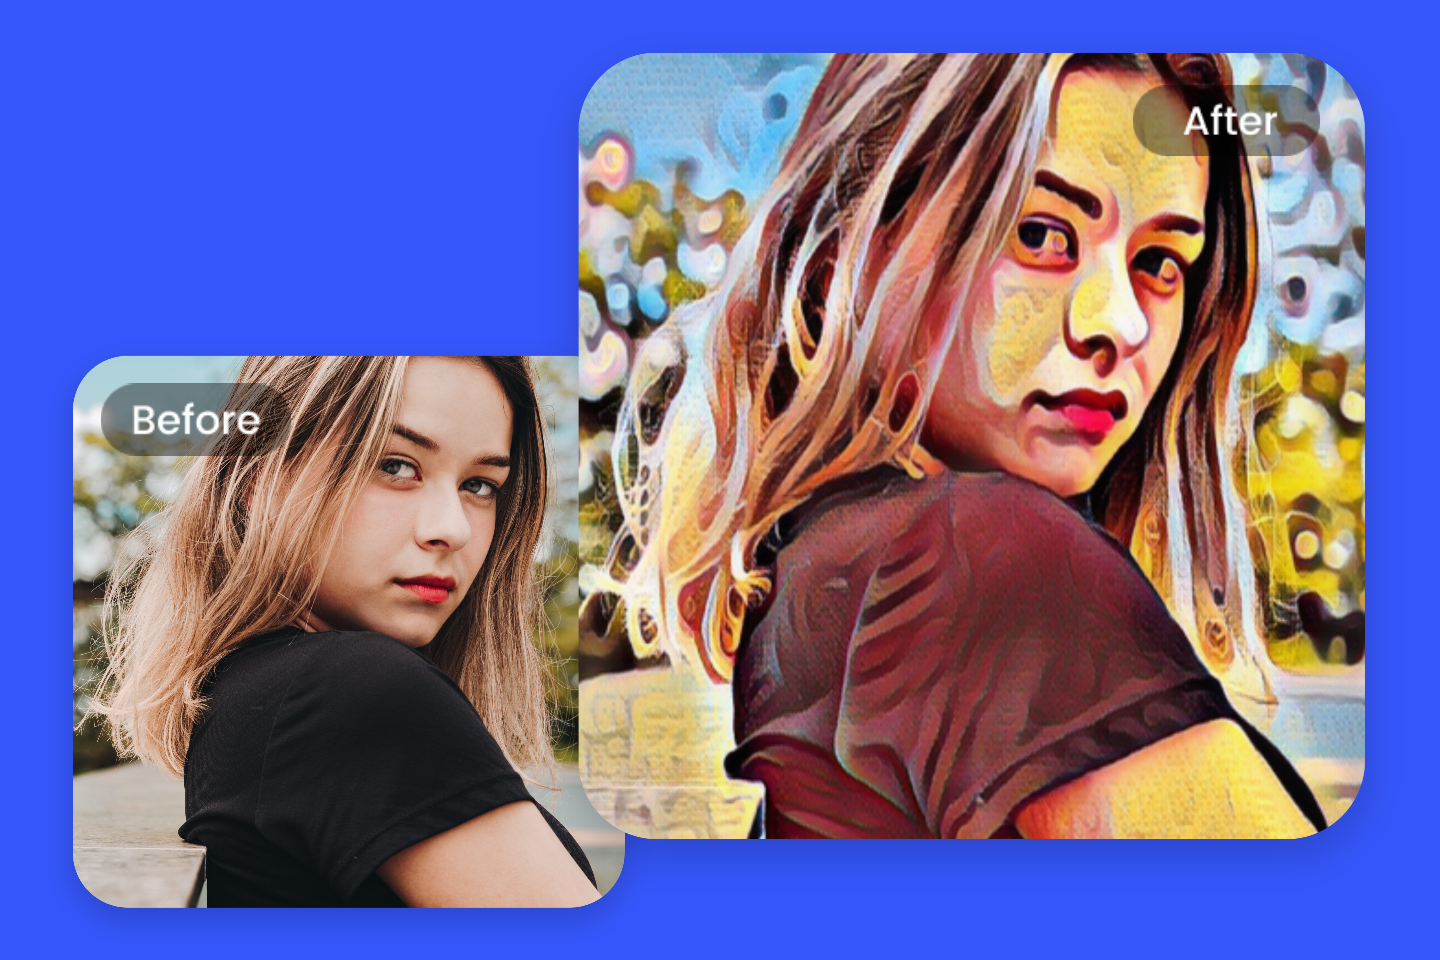 Convertir la imagen de una chica en efecto pop art usando la herramienta de efecto pop art de Fotor